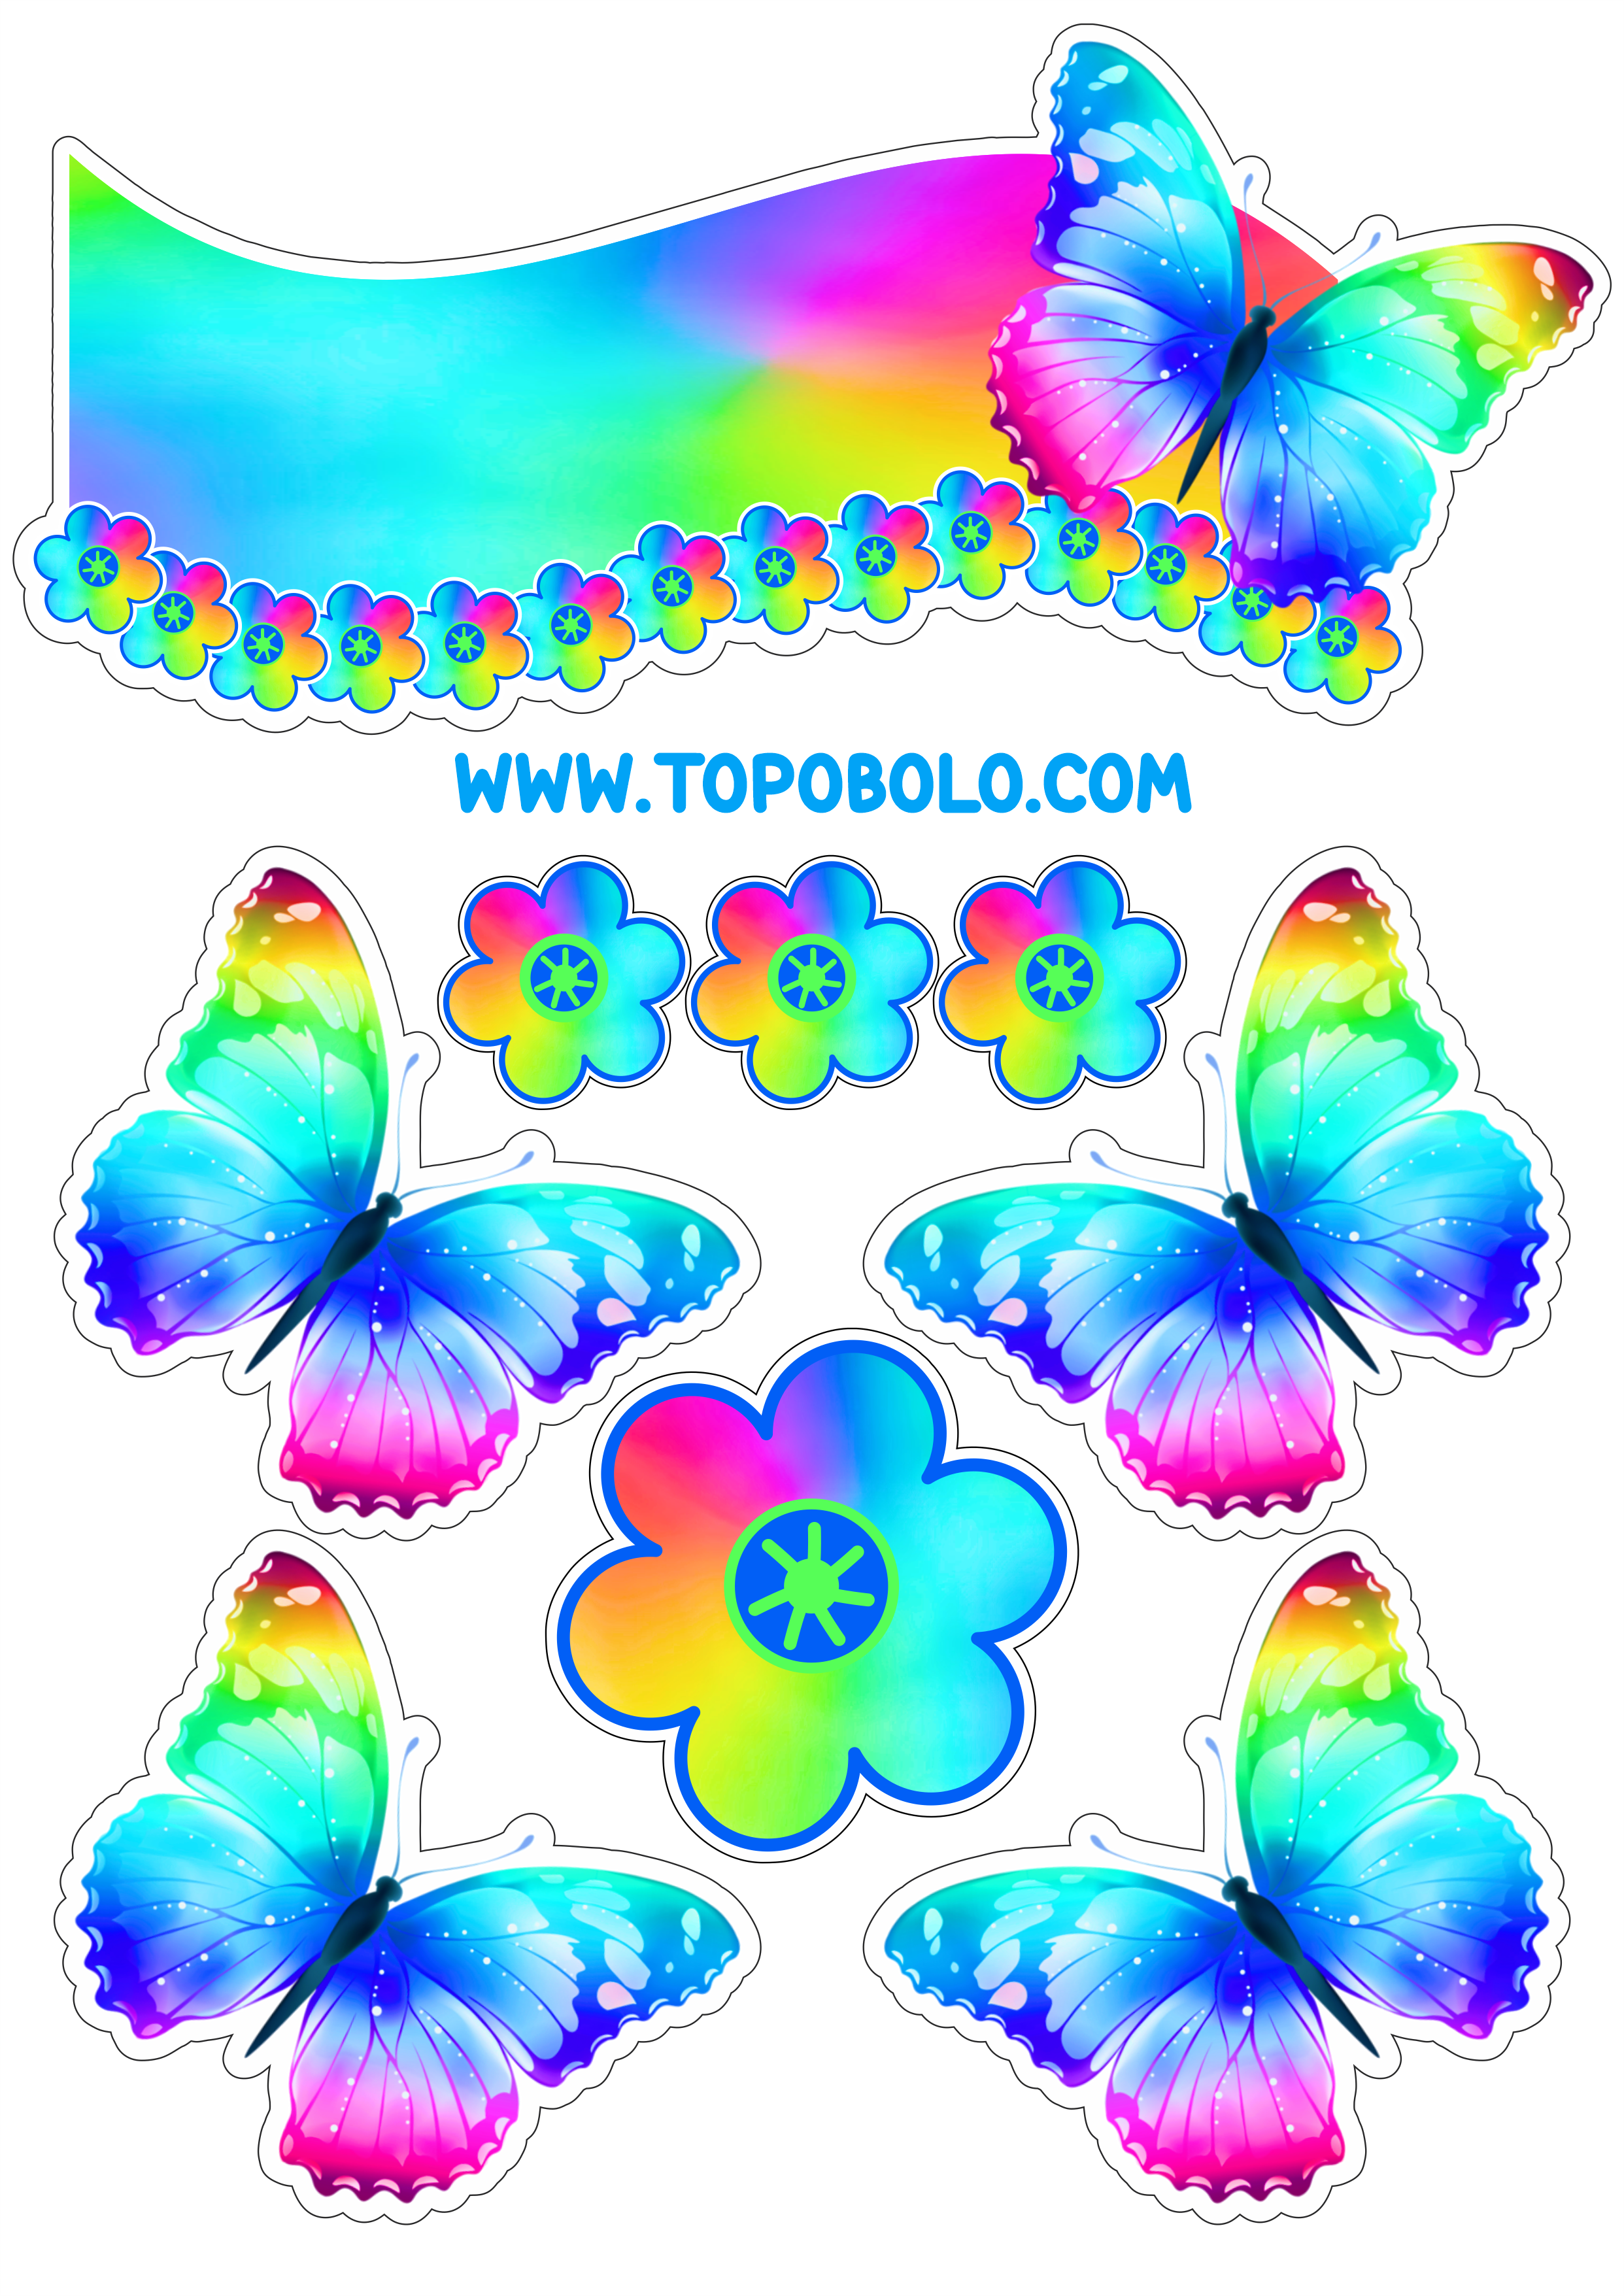 Topo de bolo para baixar borboletas e flores coloridas papelaria criativa png